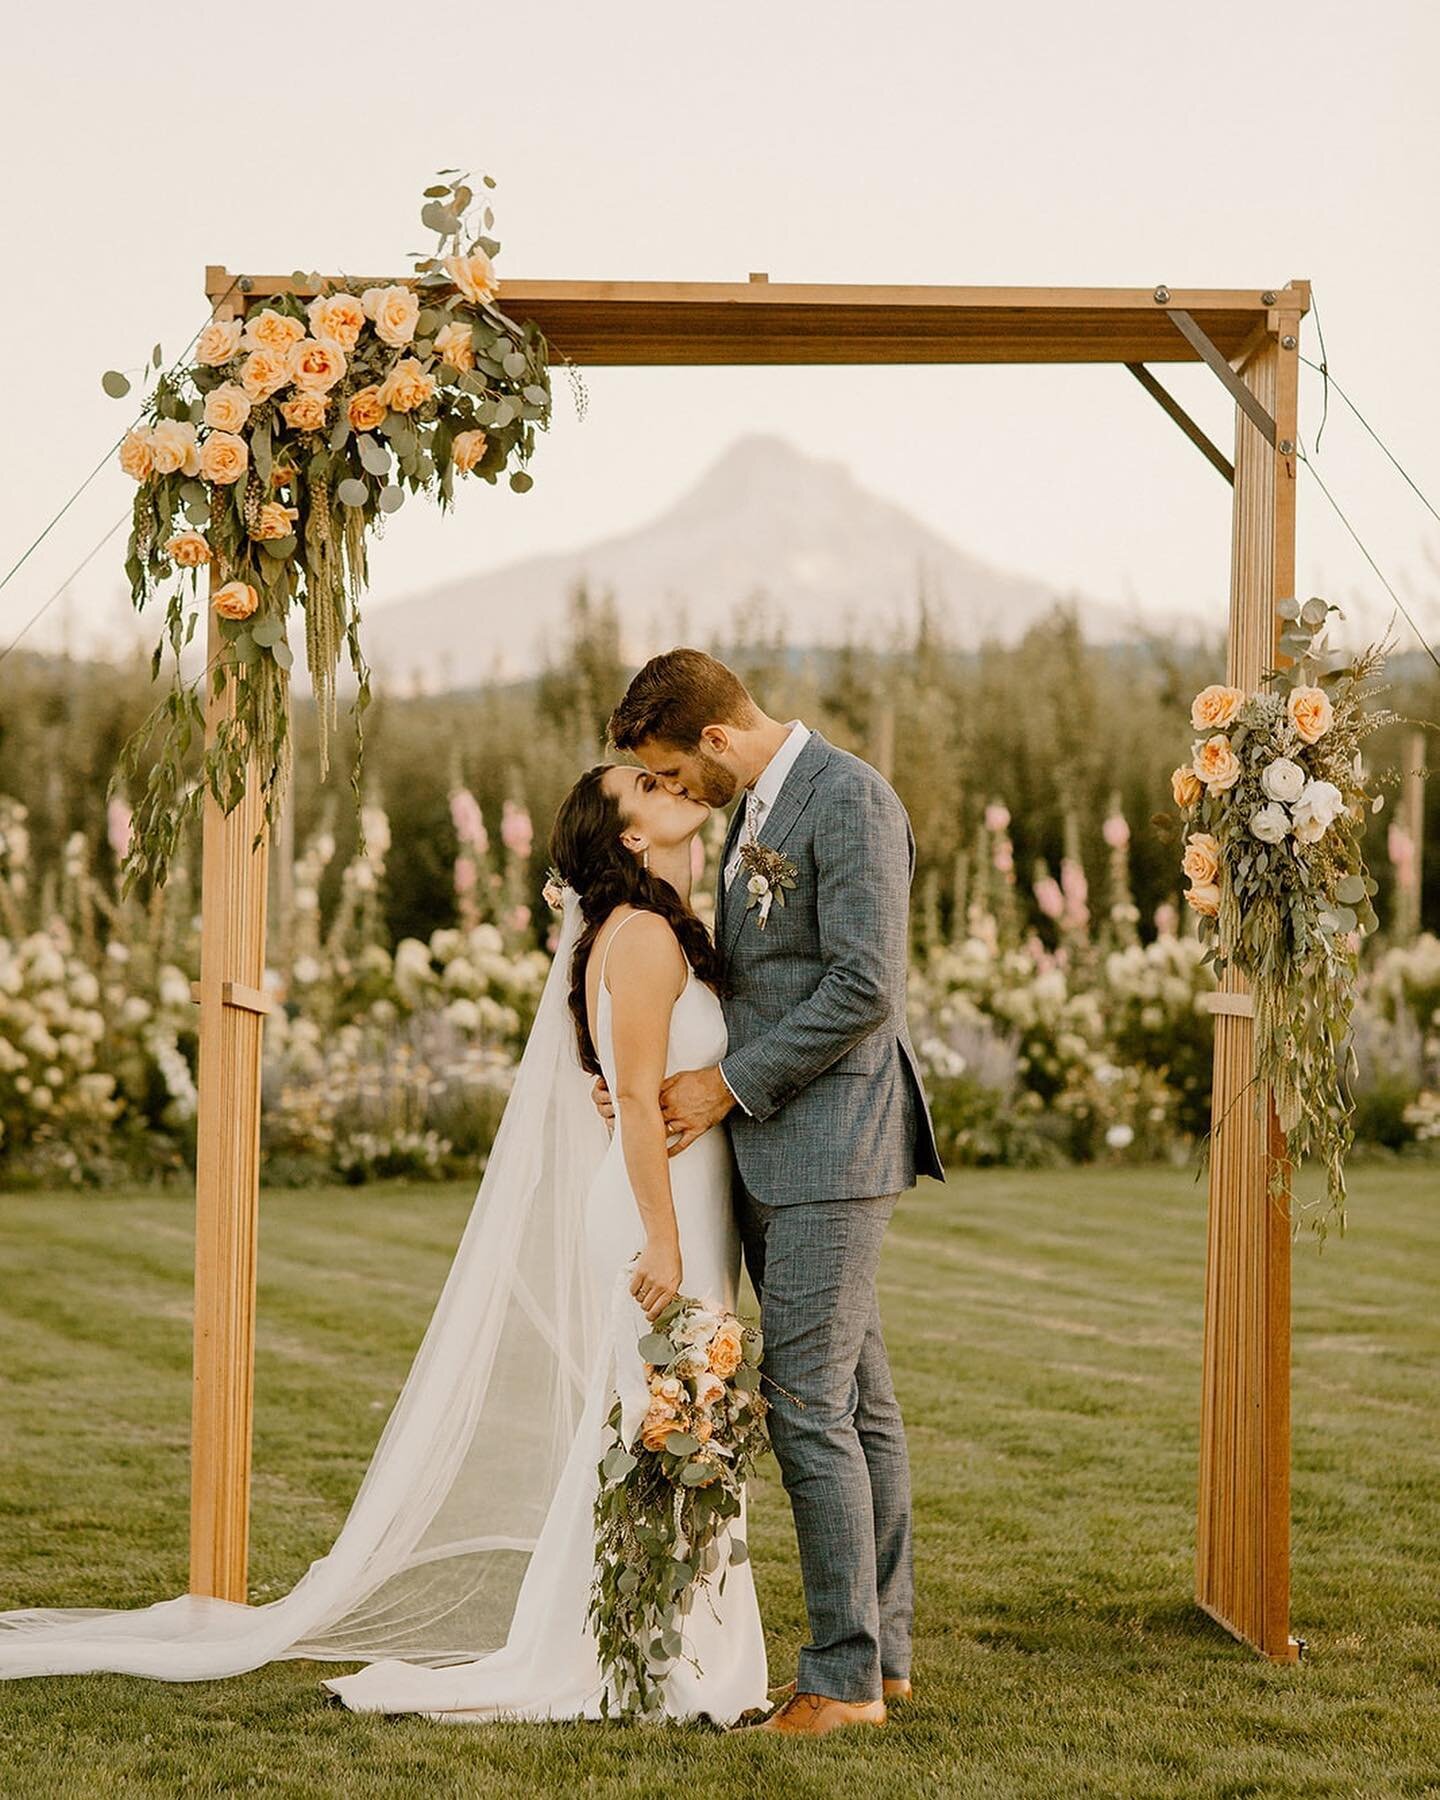 😘😘😘⁠⁠
⁠⁠
#weddingsintheorchard ⁠⁠
⁠⁠
Photo: @gina.paulson 
⁠⁠
⁠⁠
⁠⁠
⁠⁠
⁠⁠
⁠⁠
⁠⁠
⁠⁠
⁠⁠
⁠⁠
⁠⁠
⁠⁠
⁠⁠
⁠⁠
⁠⁠
⁠⁠
⁠⁠
#hoodriverwedding #mthoodwedding #columbiagorgewedding #gorgewedding #gorgeweddings #oregonwedding #washingtonwedding #pdxwedding #mthood